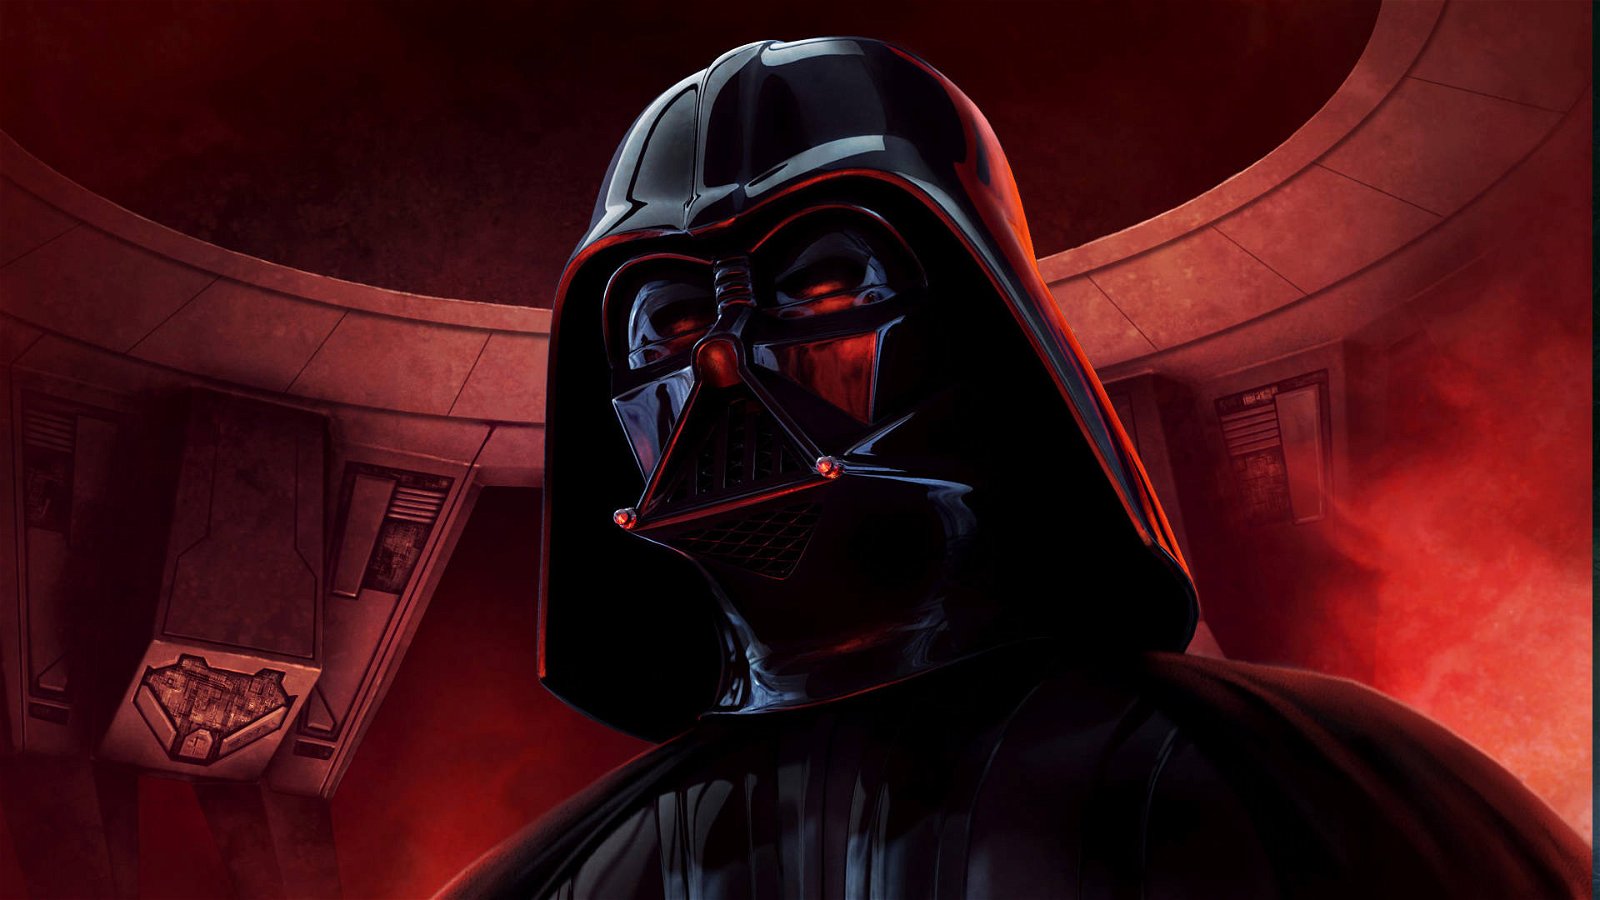 Immagine di James Earl Jones si ritira da Star Wars, smetterà di doppiare Darth Vader